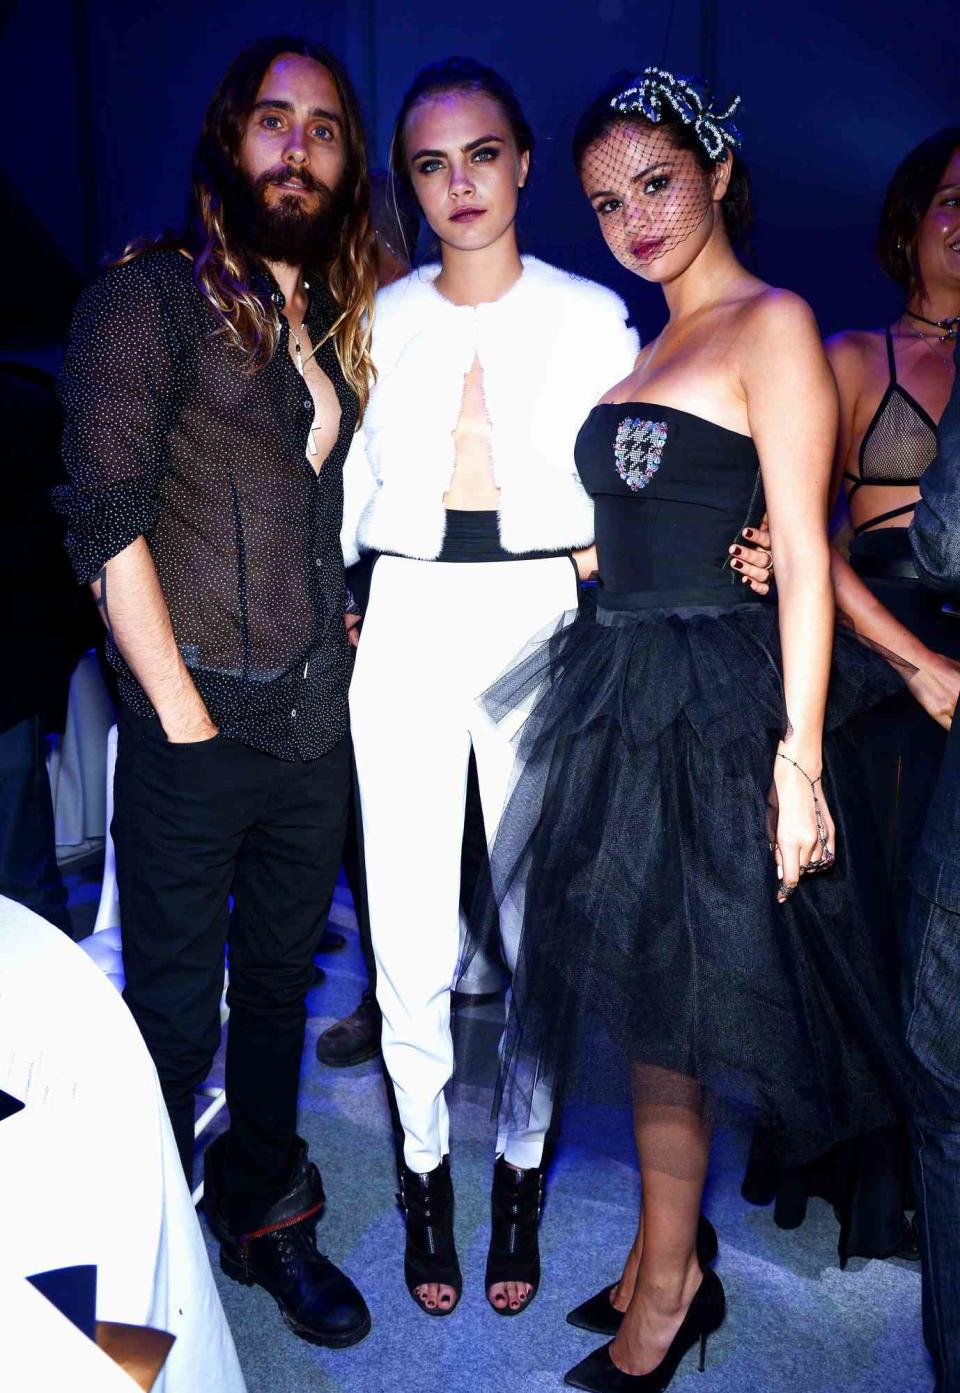 Jared Leto, Cara Delevingne and Selena Gomez